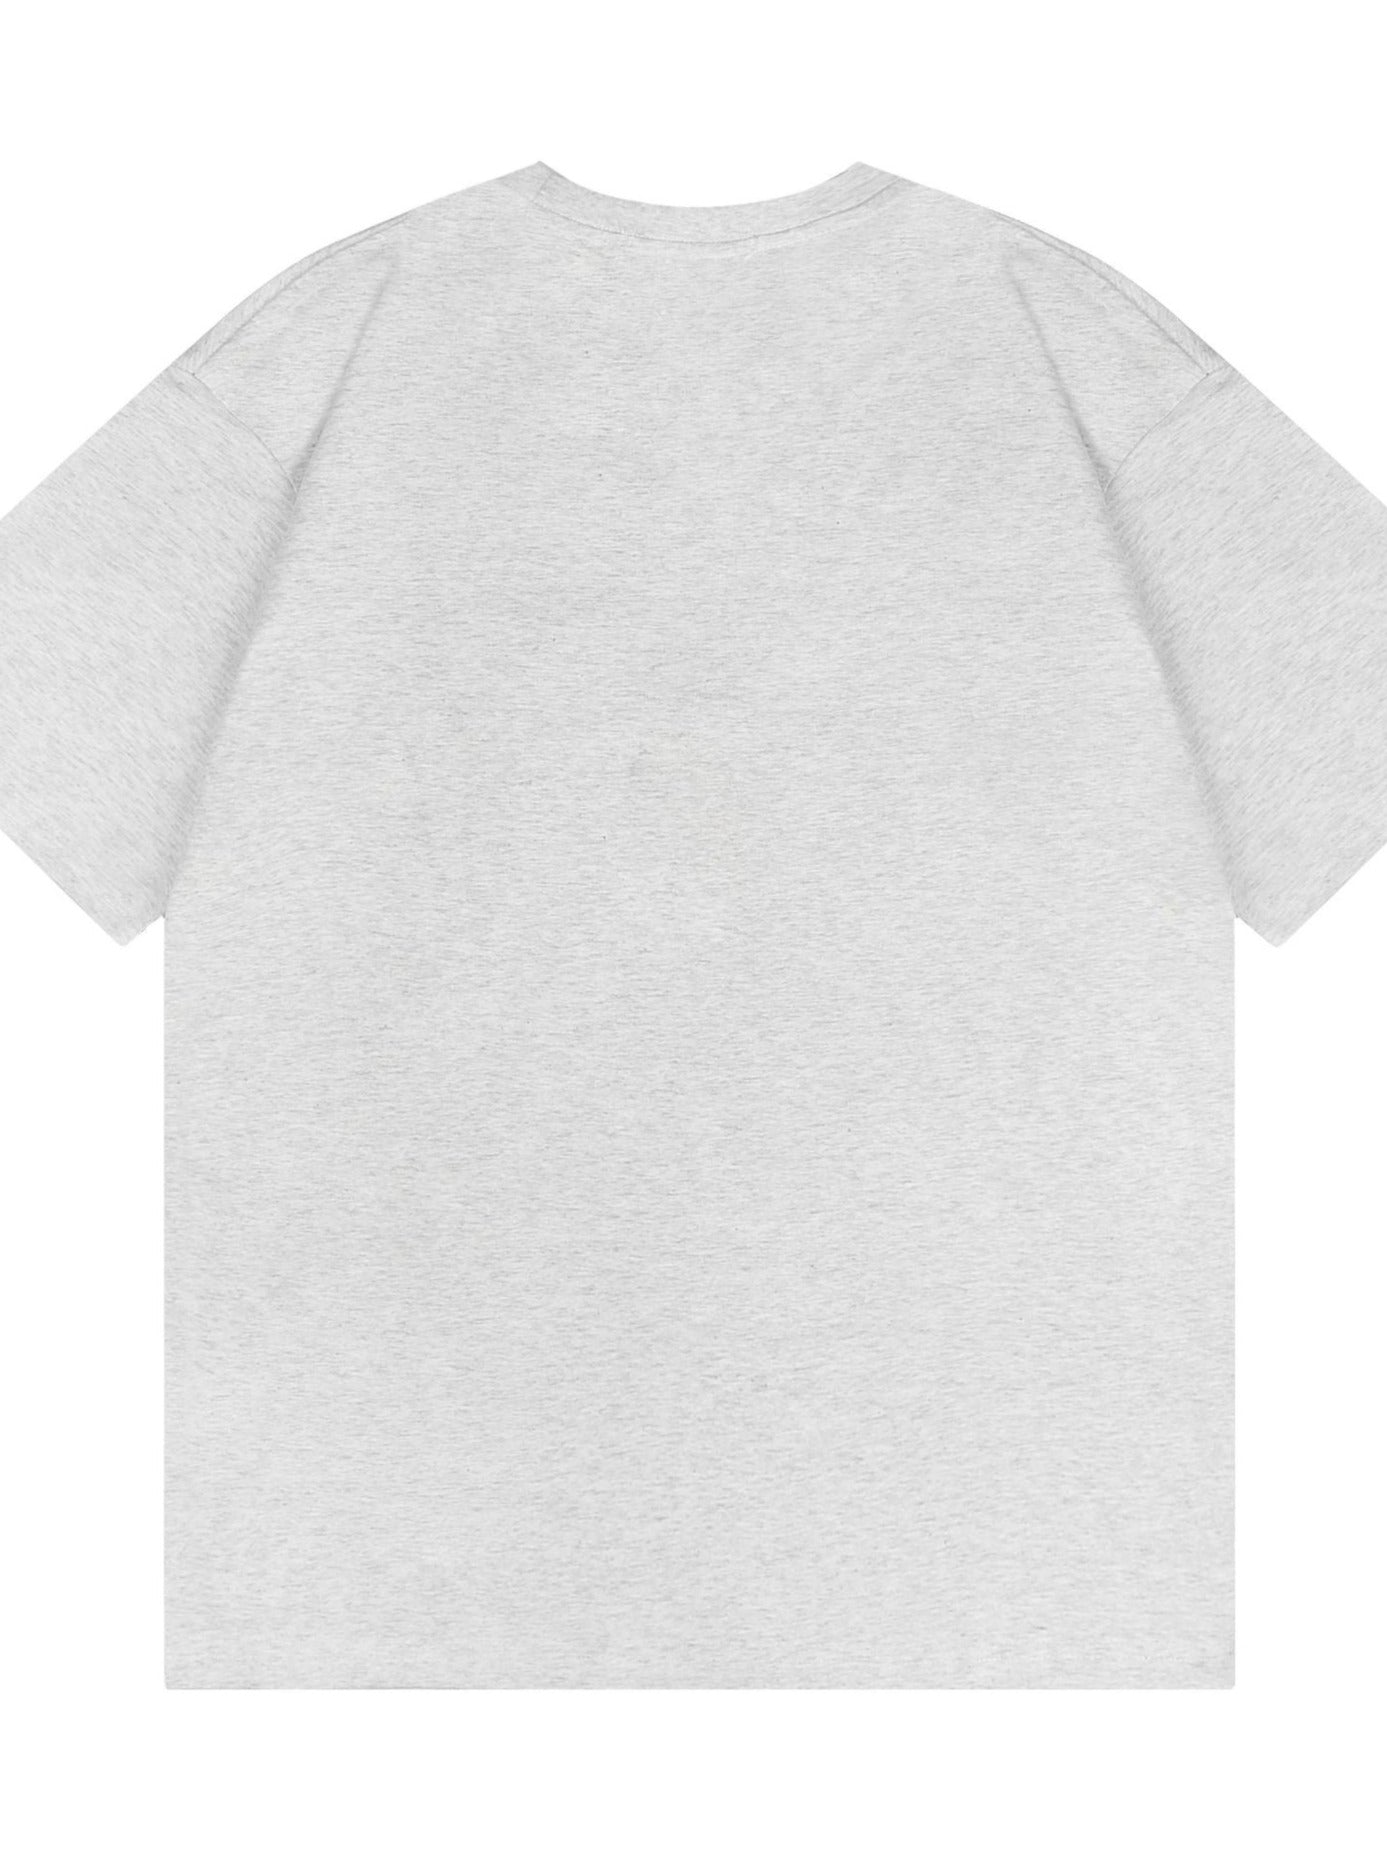 Casual Loose Graphic Printed Men's Shirt